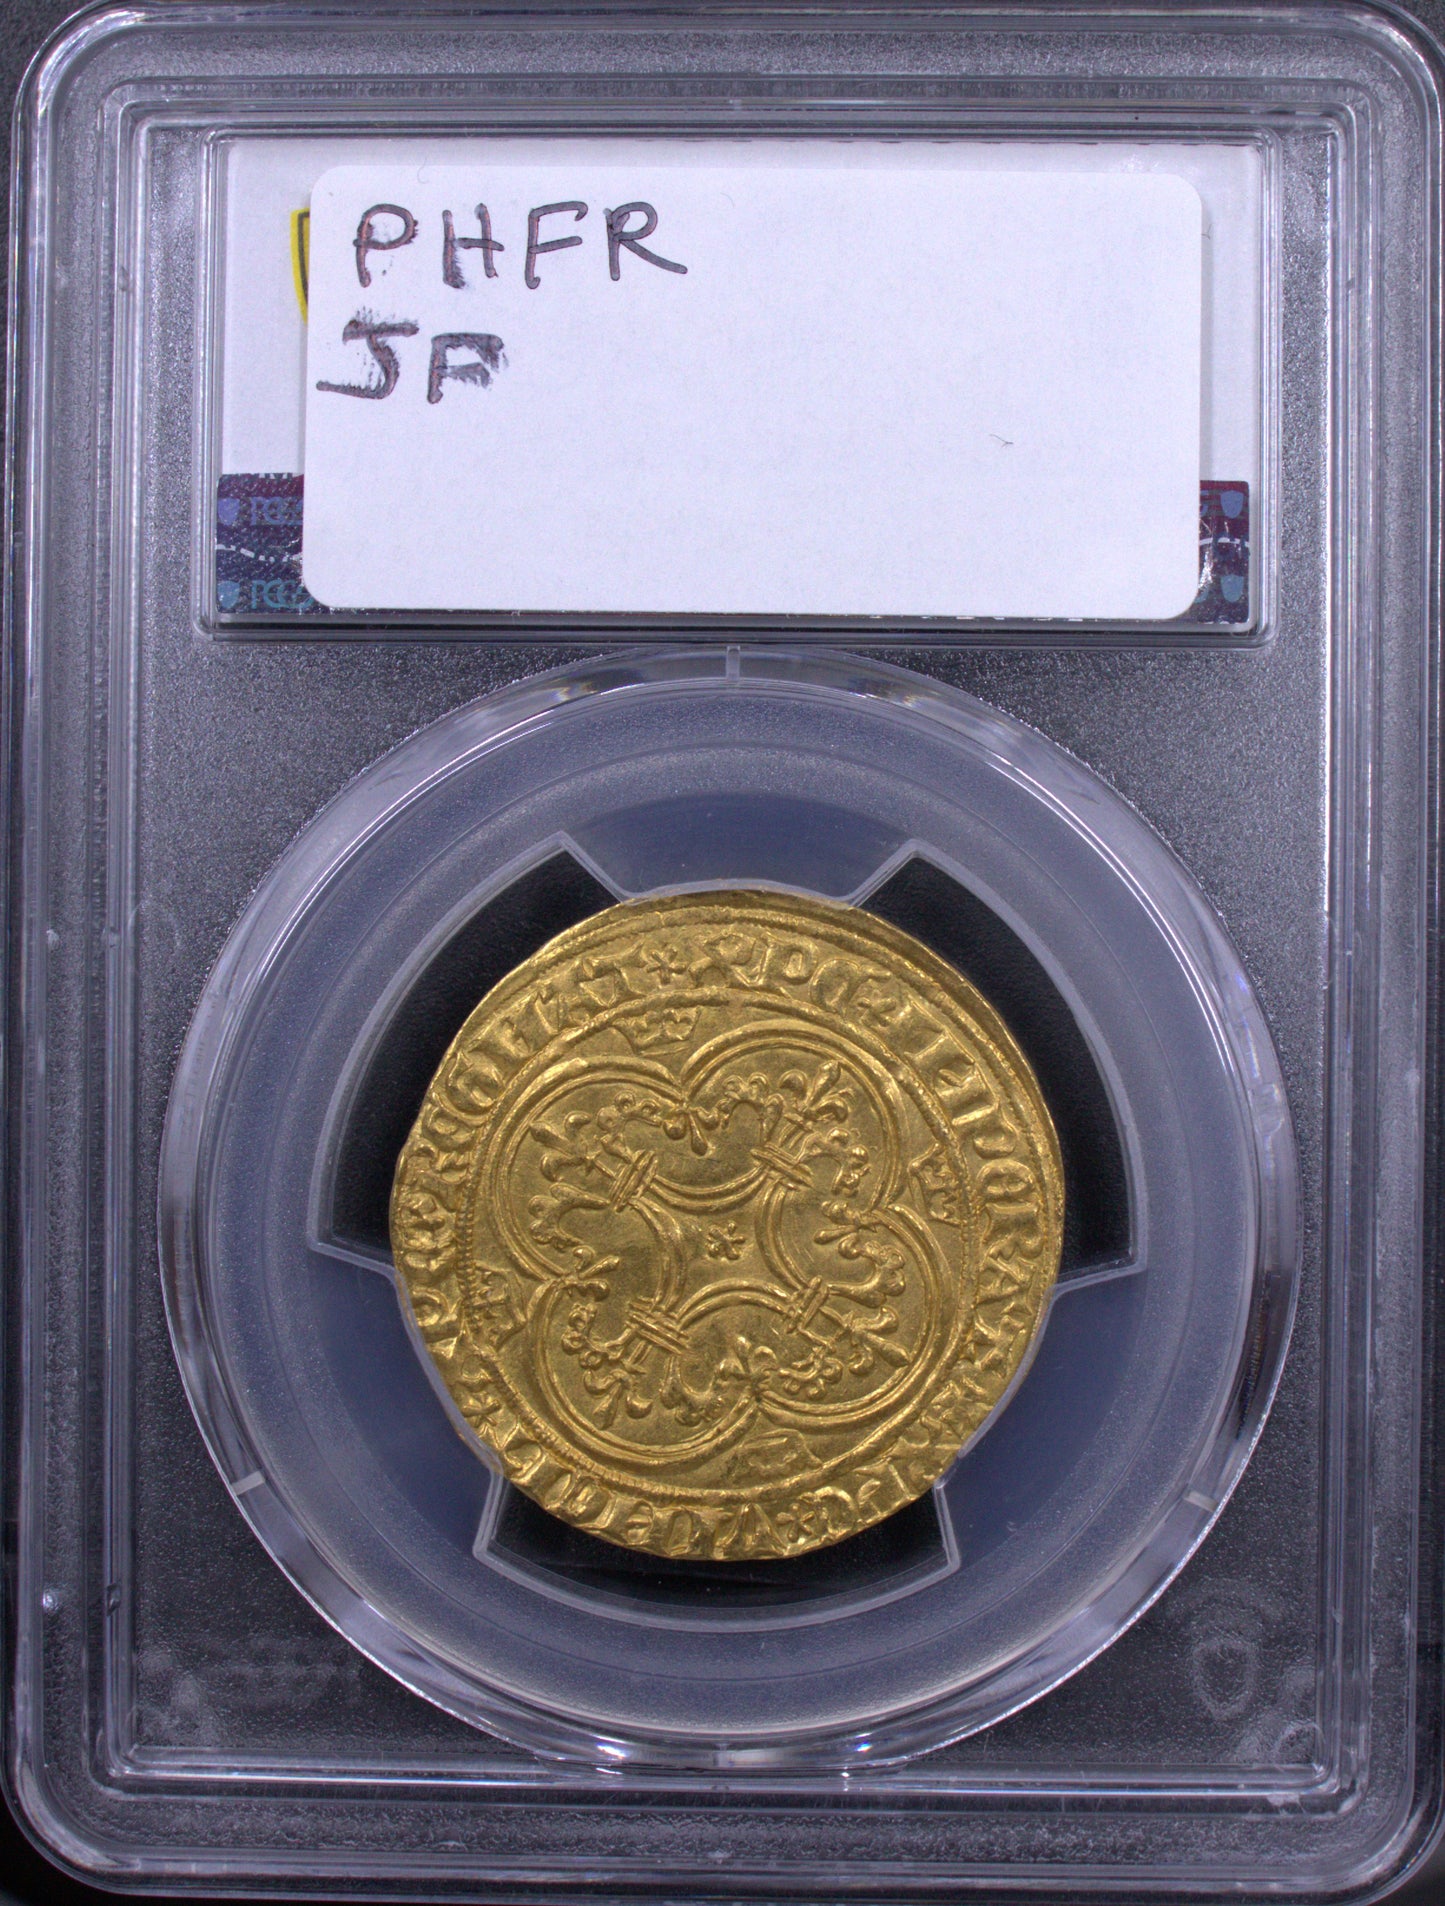 1380-1422 France Gold Ecu d'Or a la couronne PCGS MS62